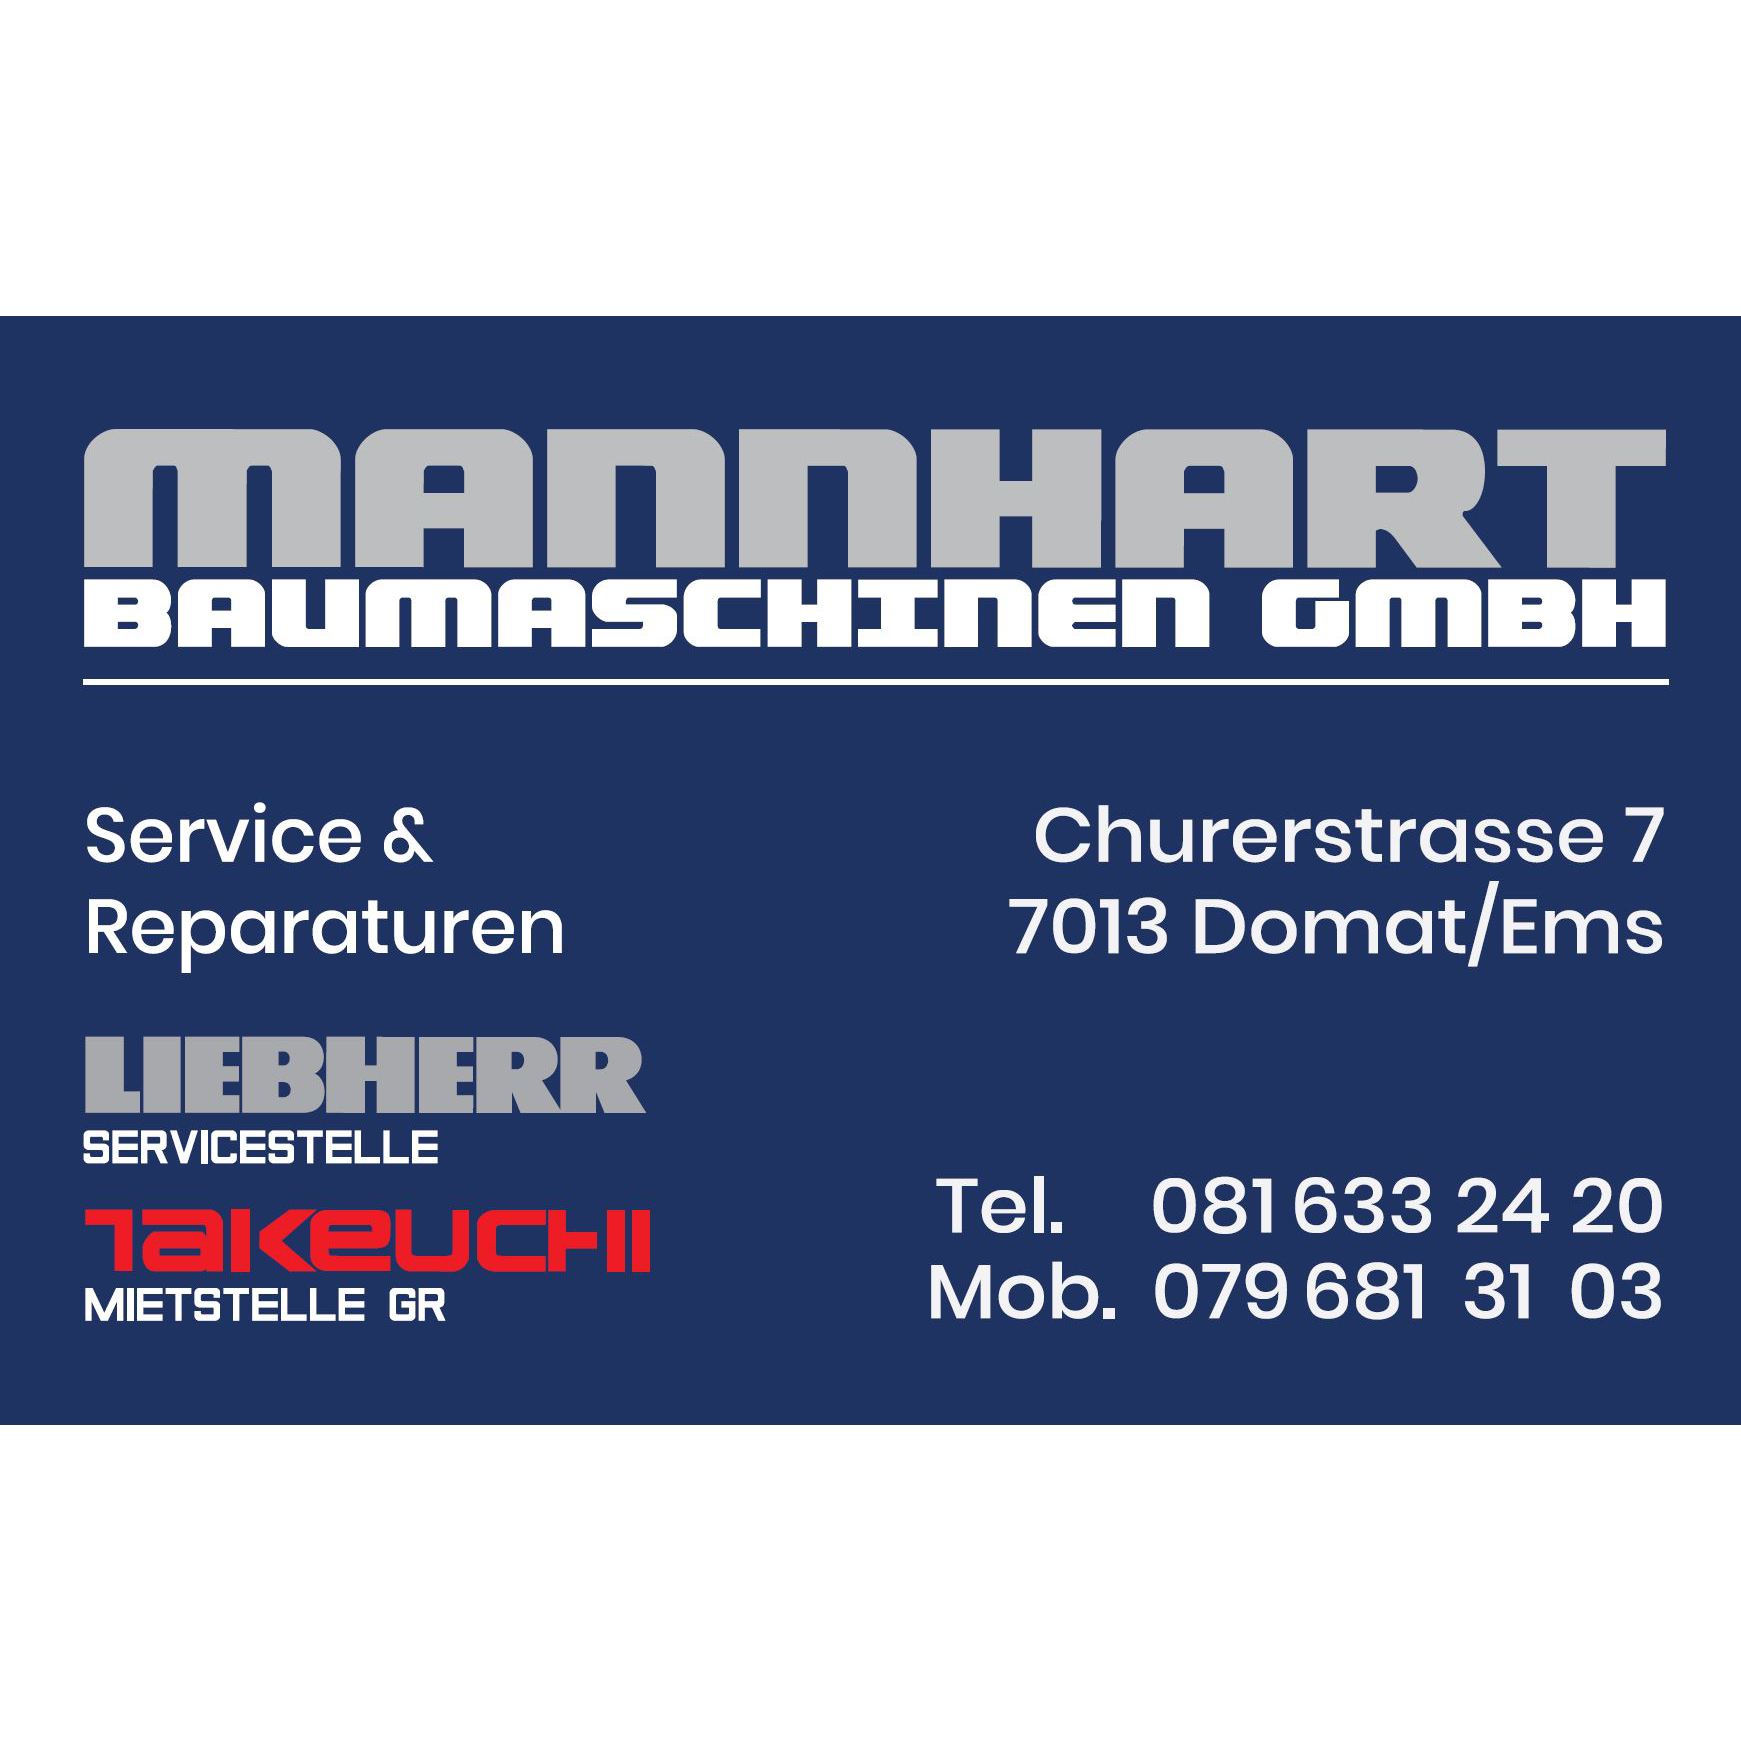 Mannhart Baumaschinen GmbH Logo